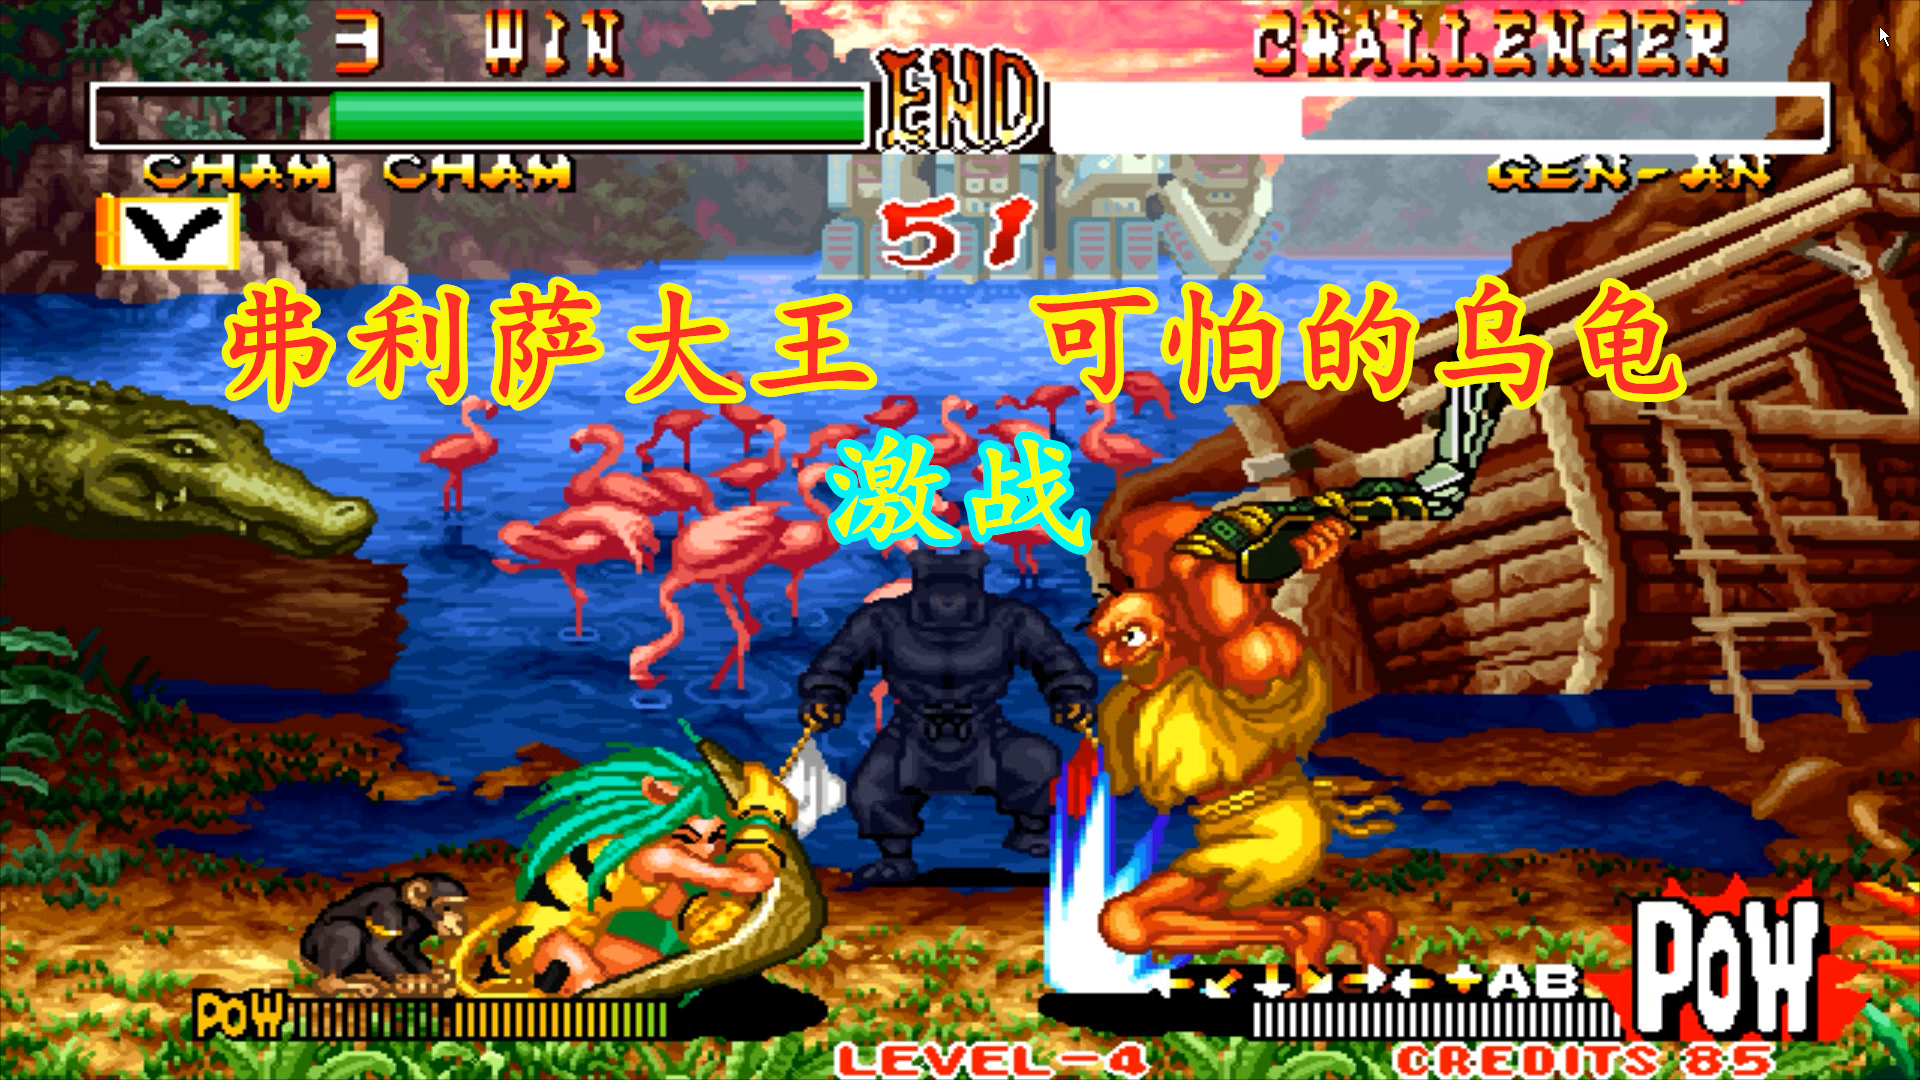 侍魂2:弗利萨大王决战处男的顶级乌龟,这个乌龟手法太秀了!